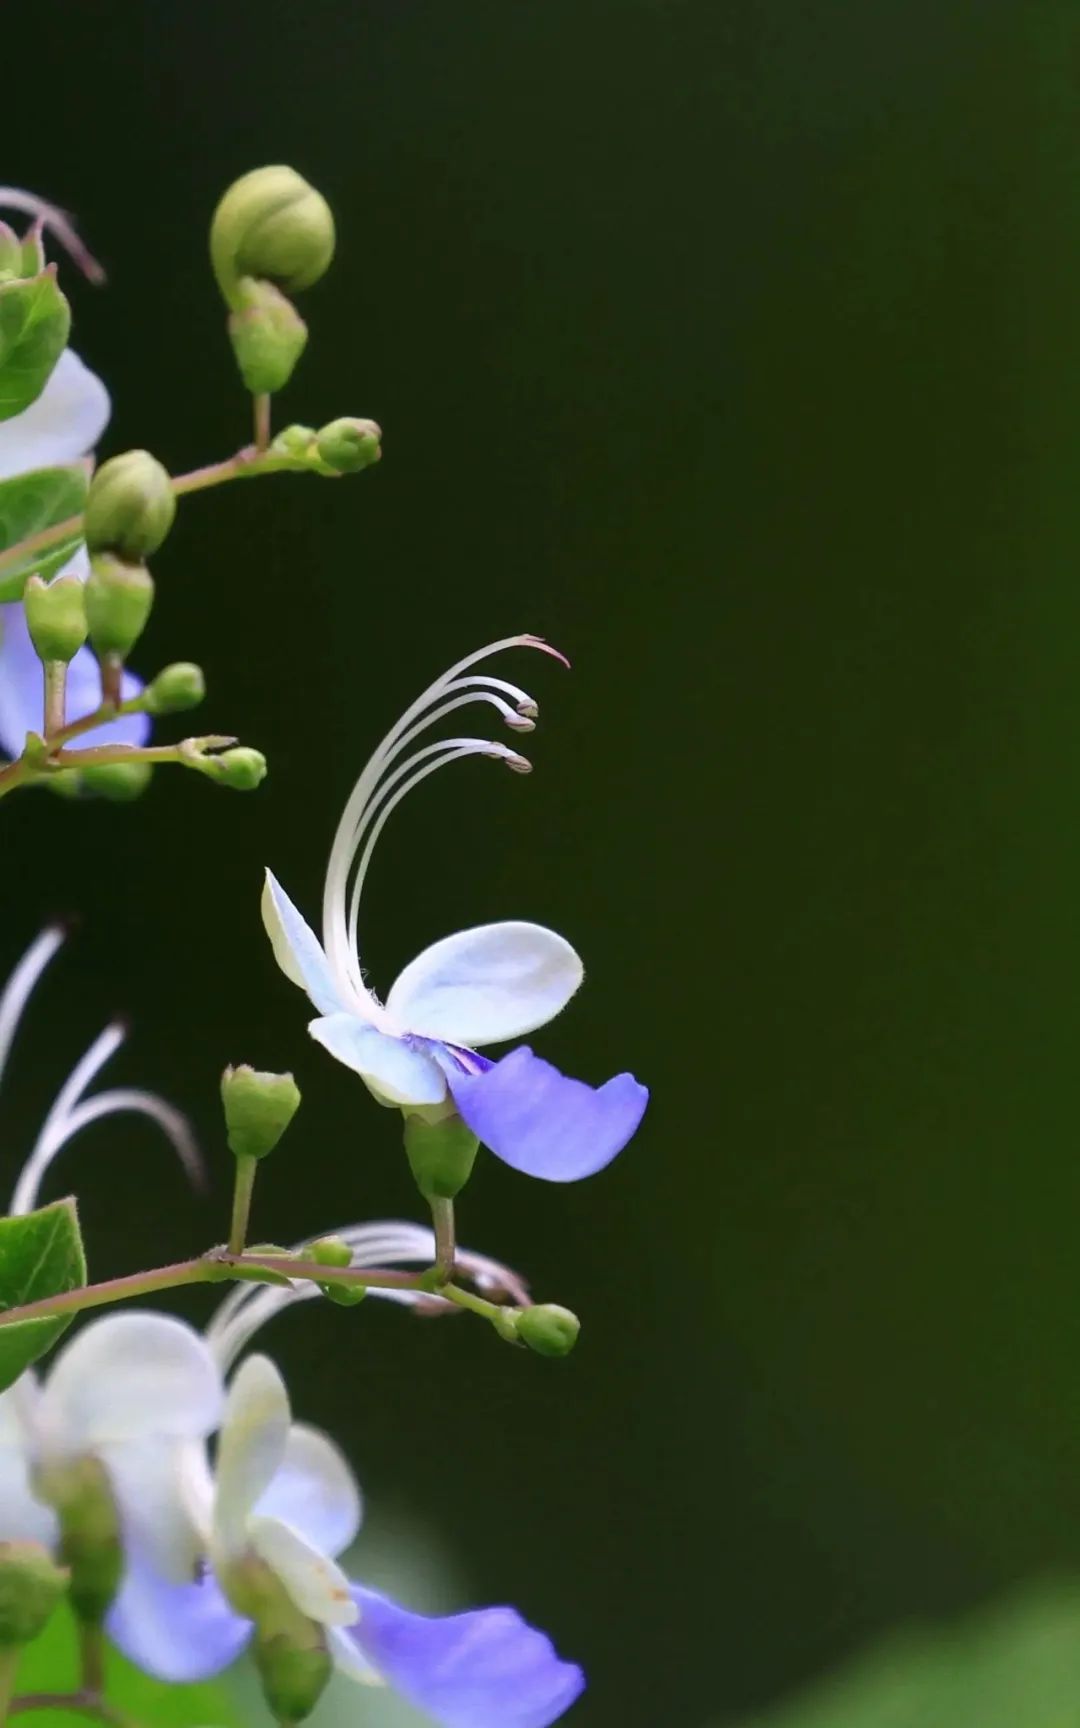 薇薇花园: 蓝蝴蝶花